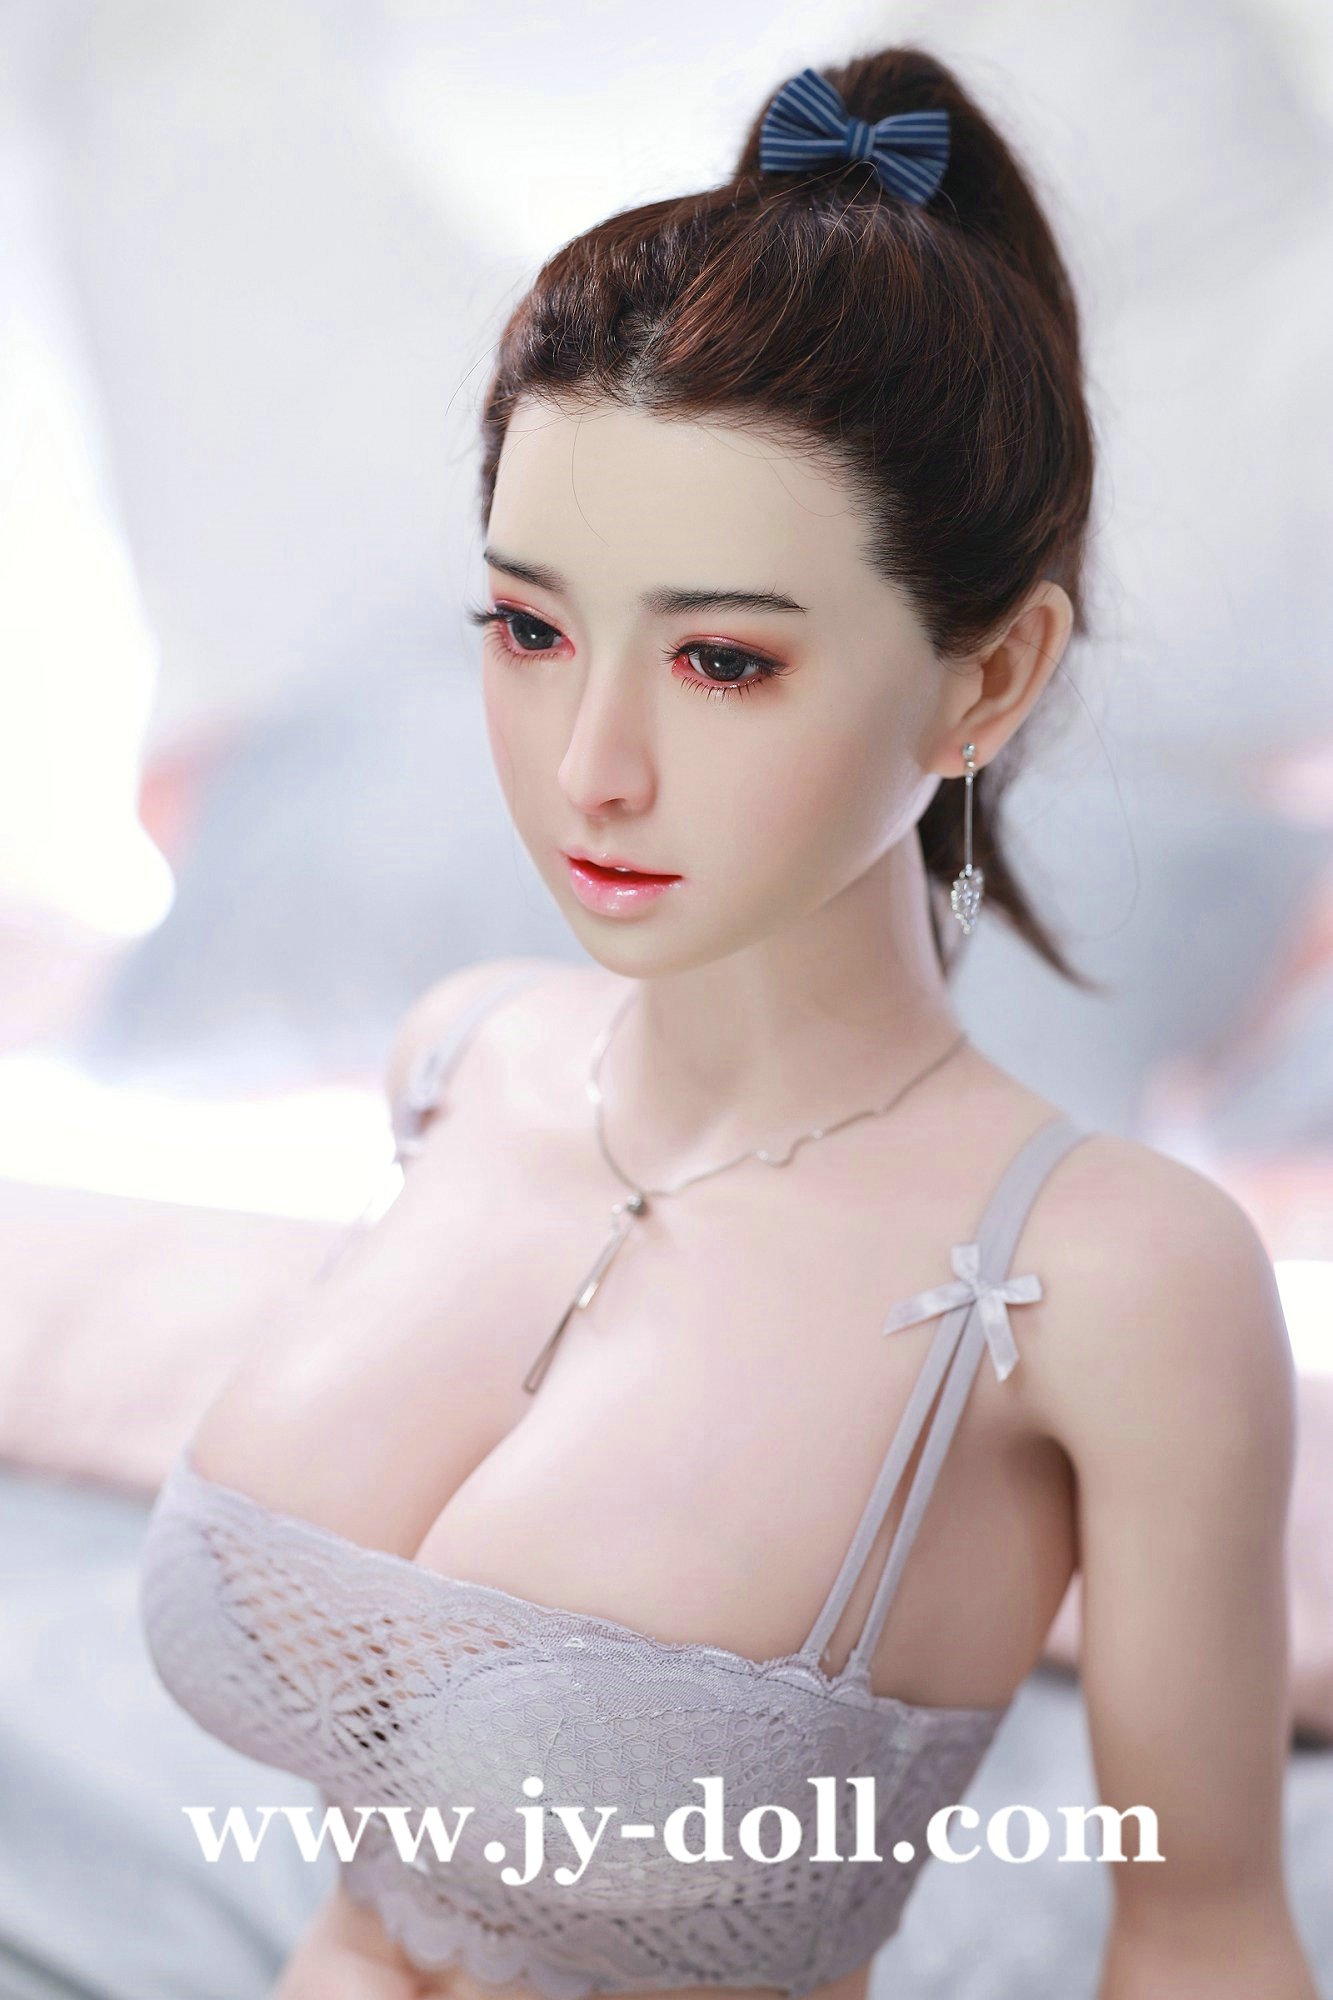 JY Doll 163cm full silicone doll Xiujie